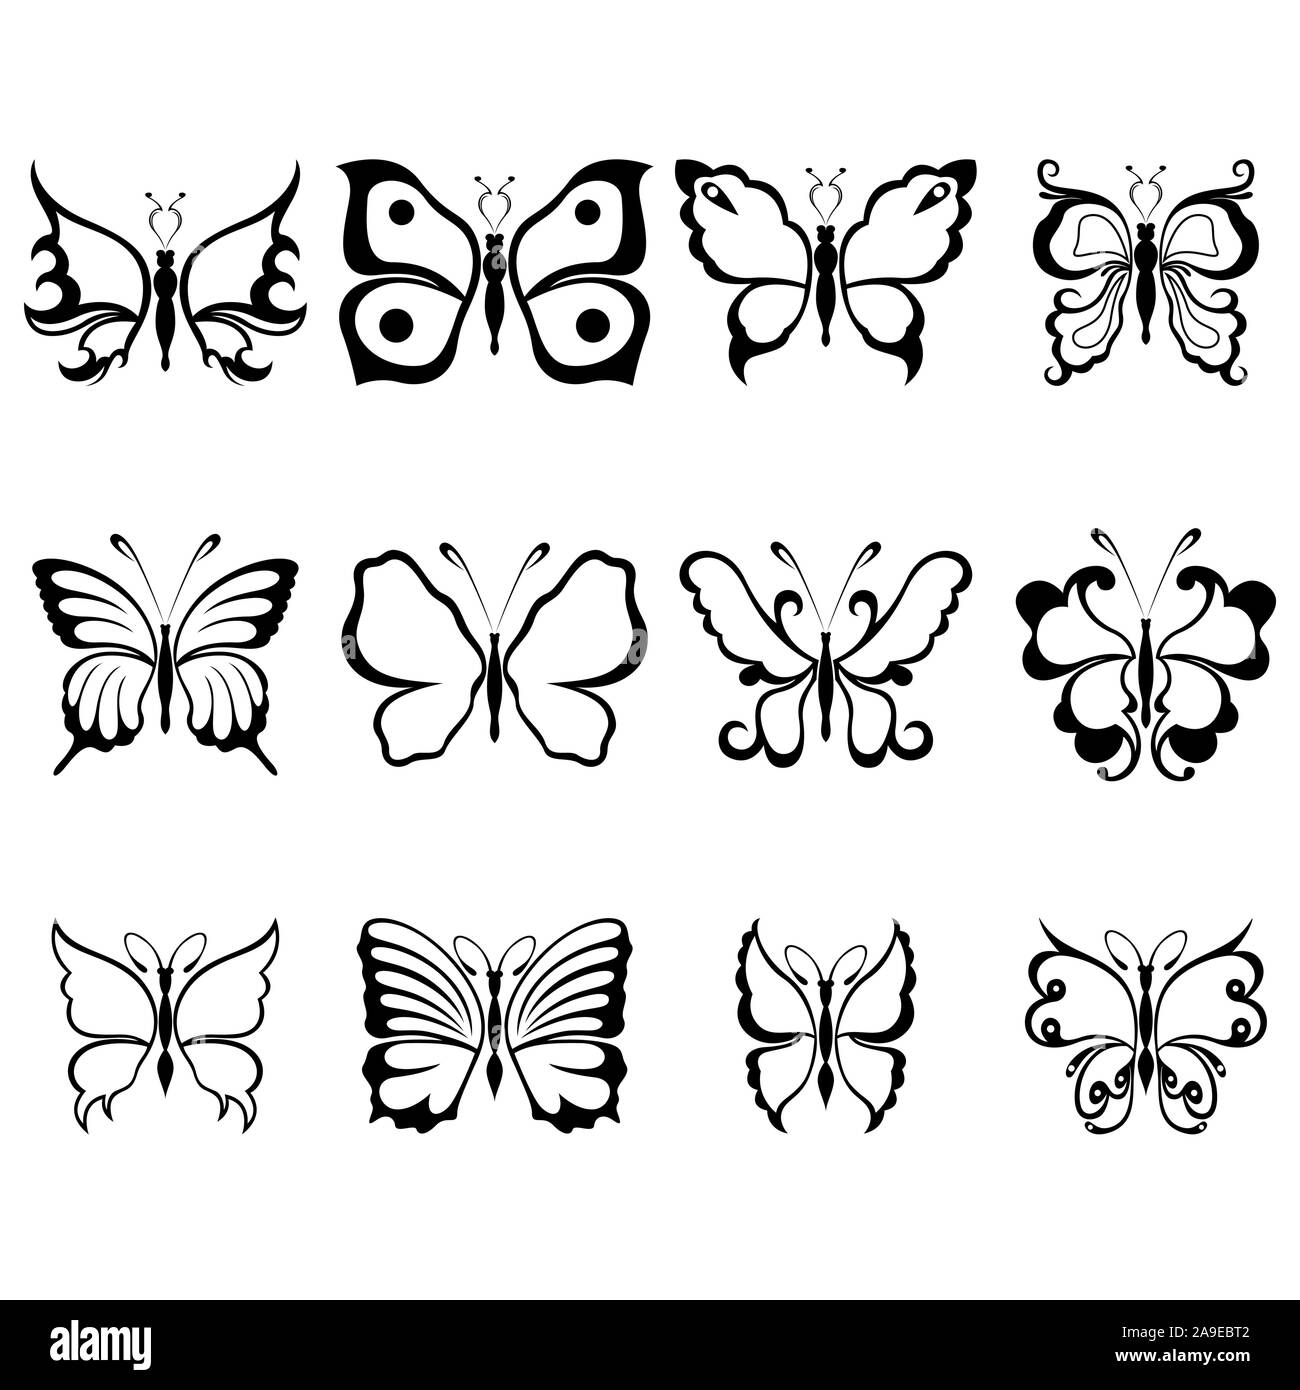 Set von 12 Schablonen der wunderschöne Schmetterlinge auf einem weißen Hintergrund, von Hand zeichnen Abbildung Stock Vektor